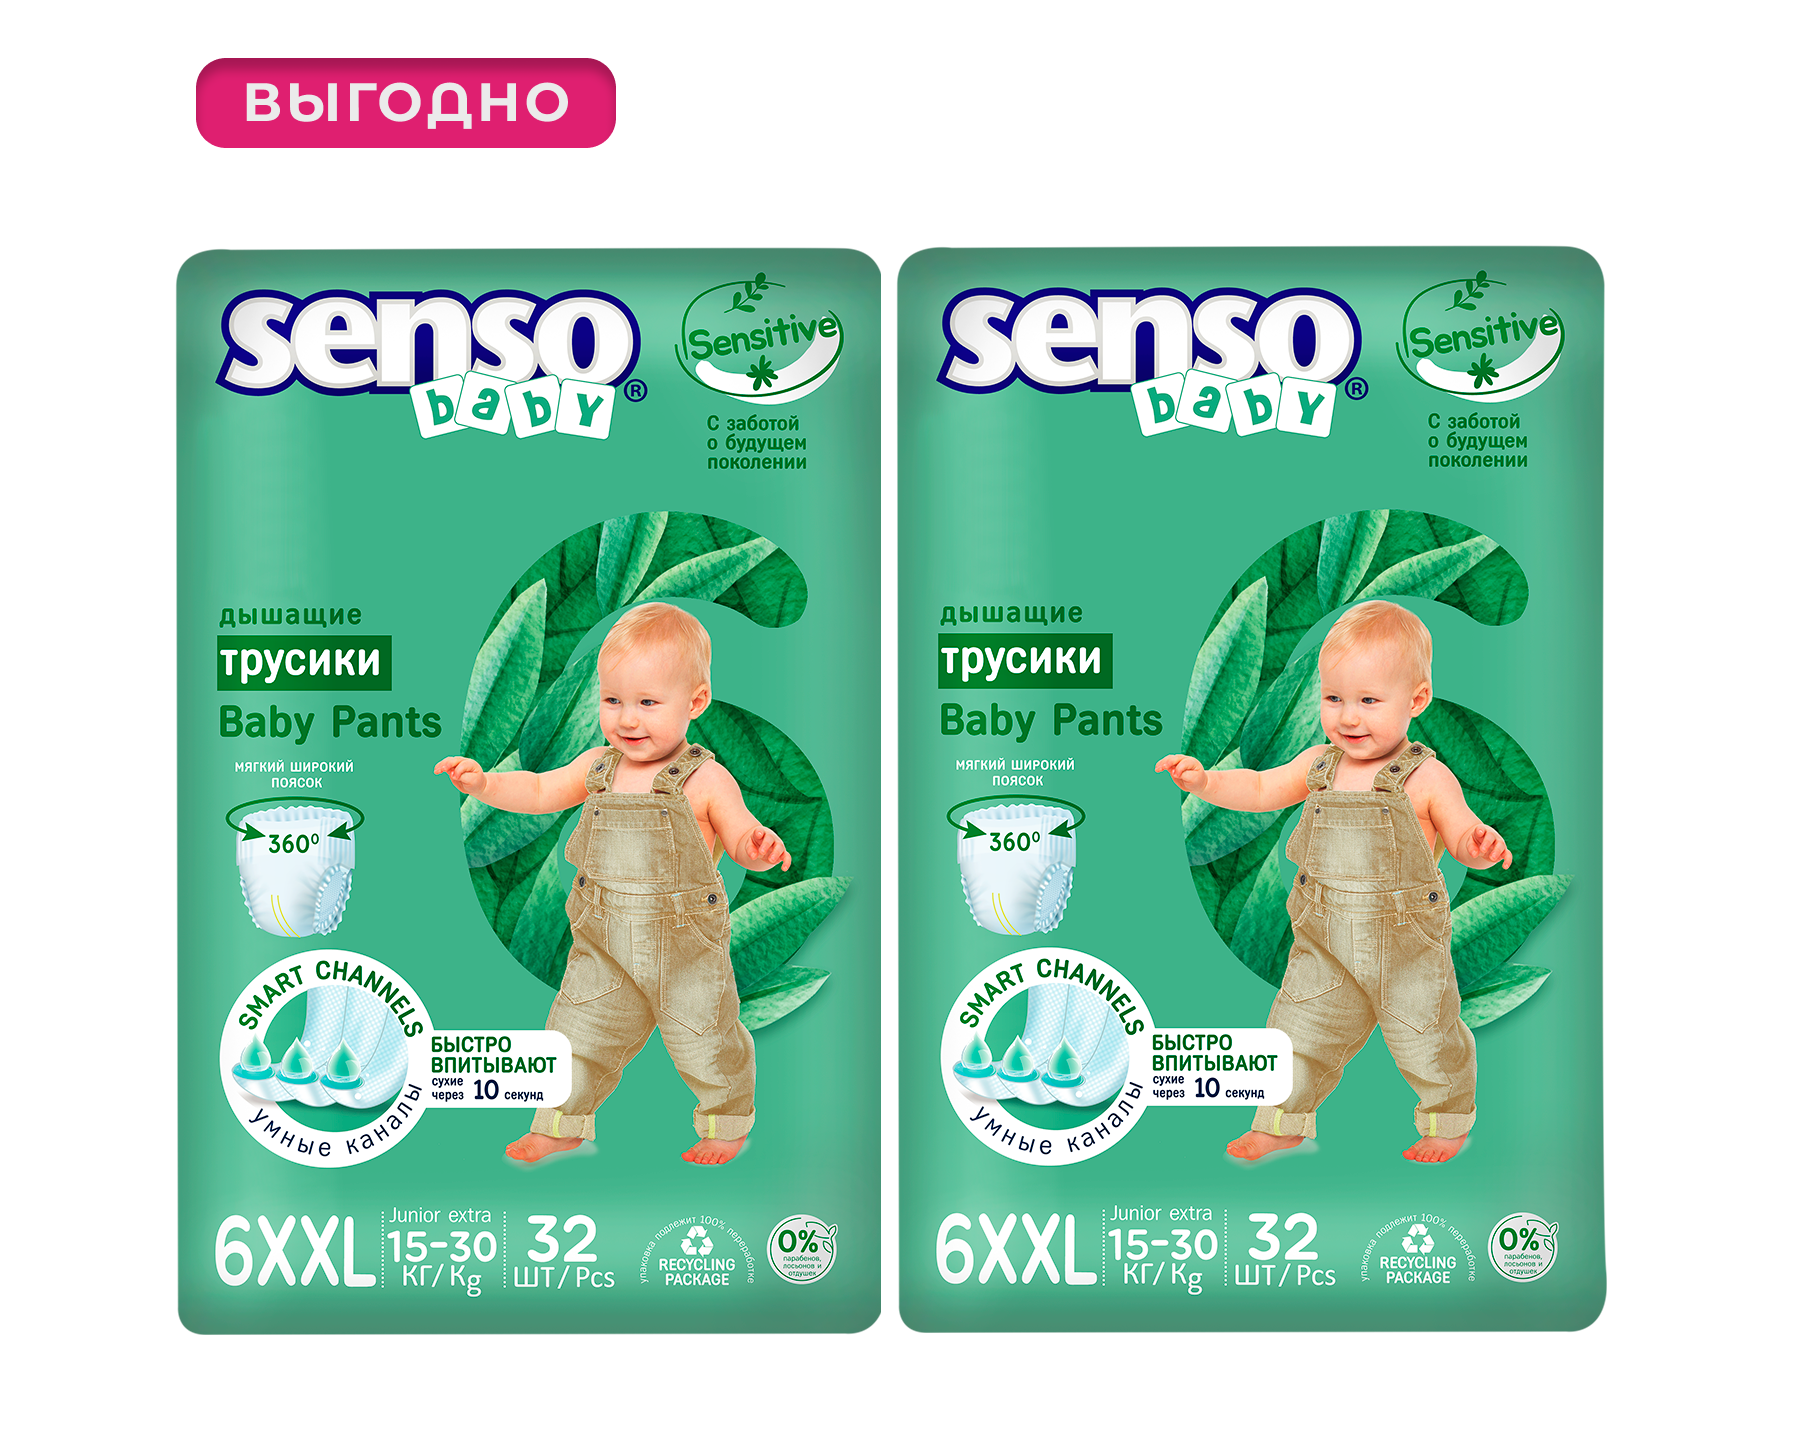 Трусики для детей SENSO BABY SENSITIVE 6XXL junior extra (15-30кг) 32шт, 2 упаковки